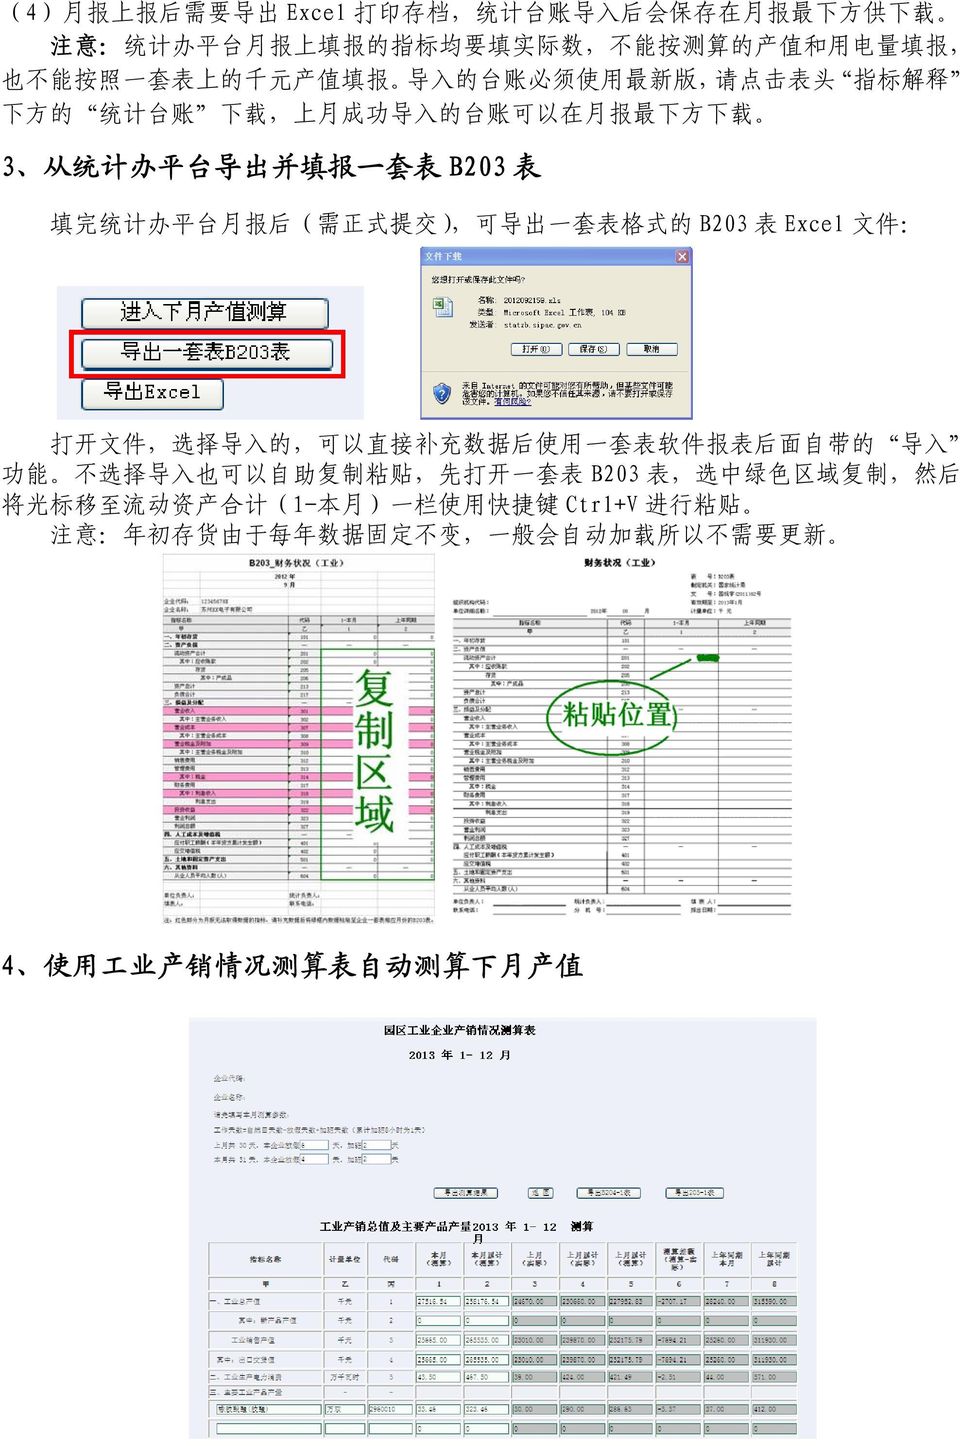 ), 可 导 出 一 套 表 格 式 的 B203 表 Excel 文 件 : 打 开 文 件, 选 择 导 入 的, 可 以 直 接 补 充 数 据 后 使 用 一 套 表 软 件 报 表 后 面 自 带 的 导 入 功 能 不 选 择 导 入 也 可 以 自 助 复 制 粘 贴, 先 打 开 一 套 表 B203 表, 选 中 绿 色 区